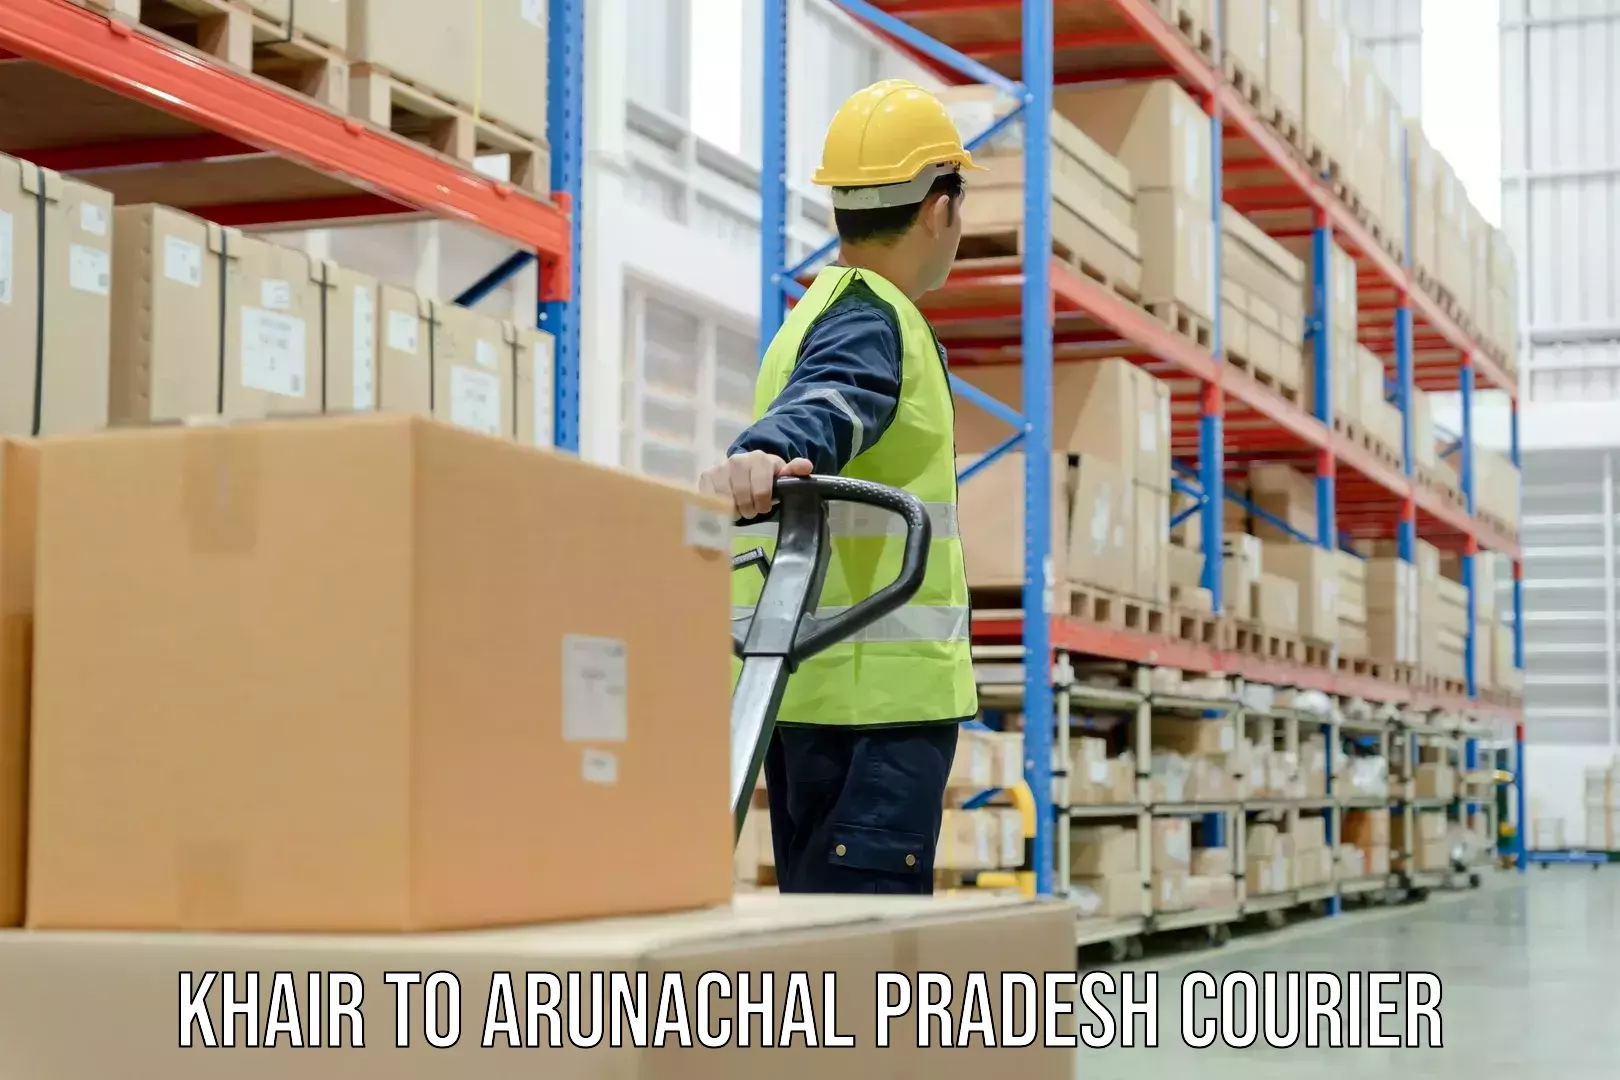 Next-day freight services in Khair to Arunachal Pradesh